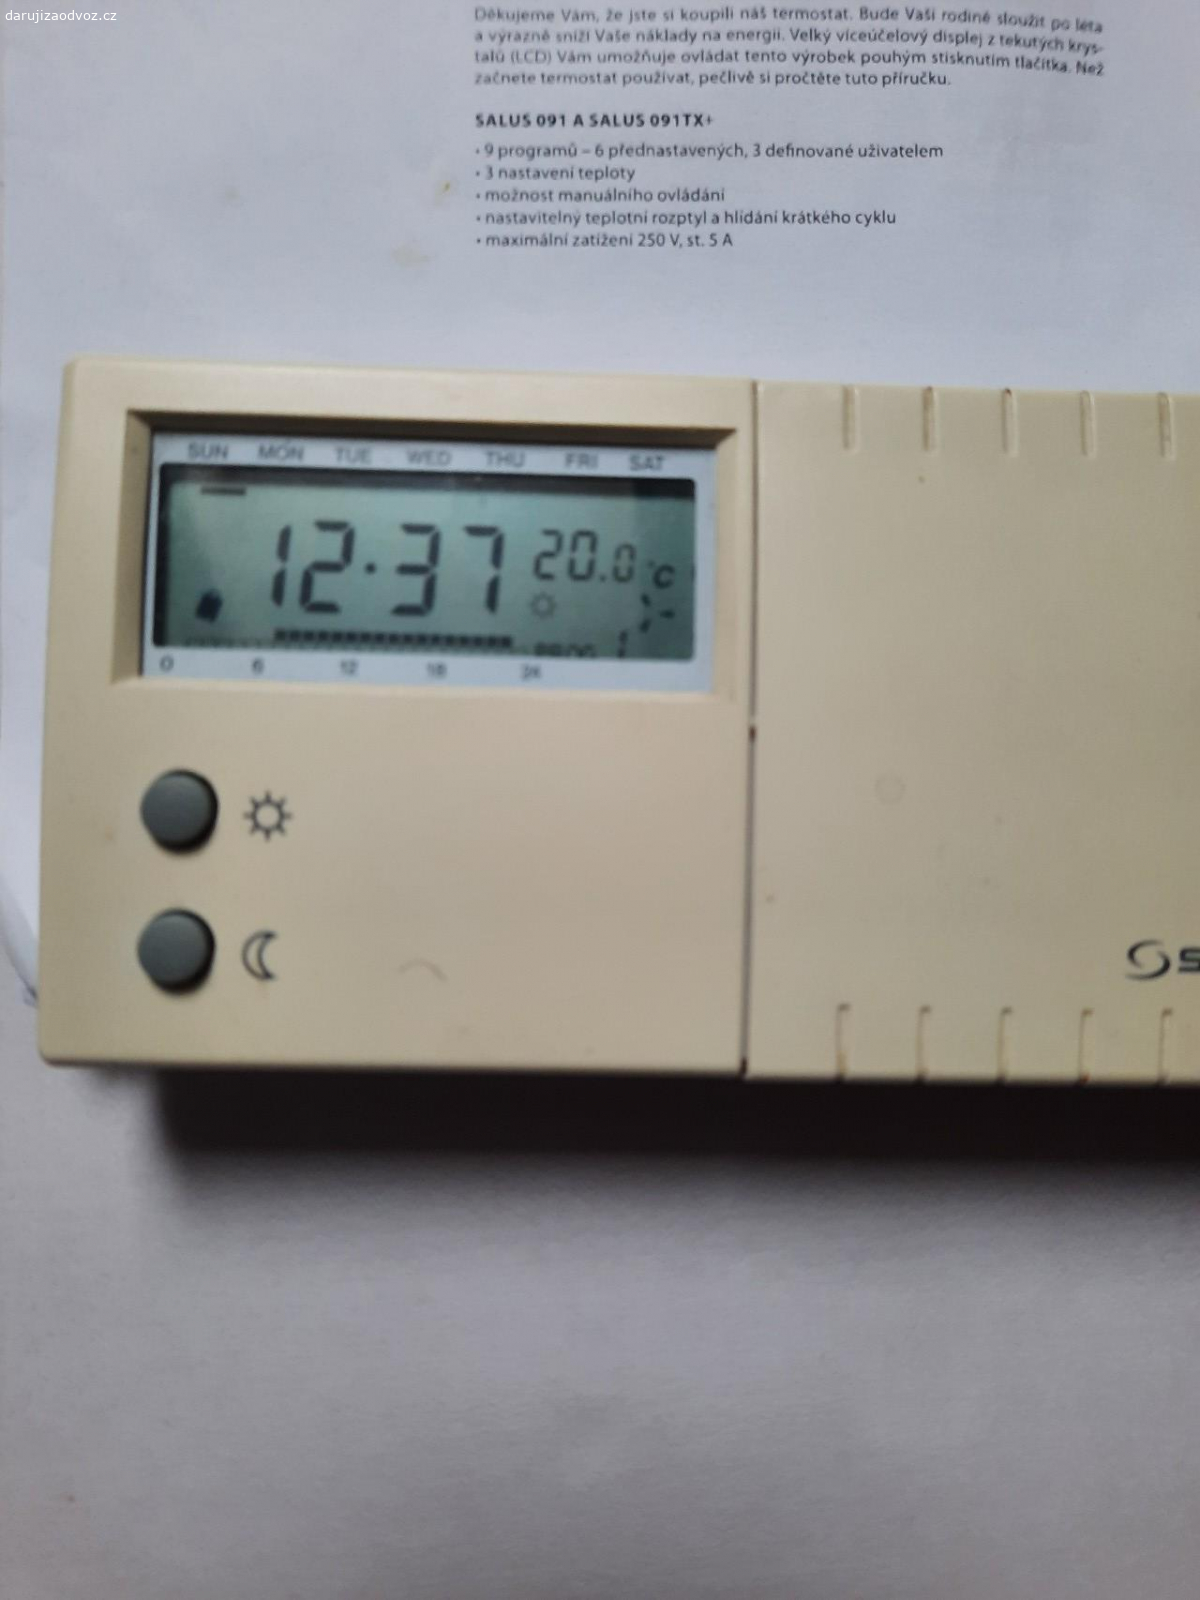 termostat na kotel fungujici. termostat dalkove ovladajici plynovy kotel